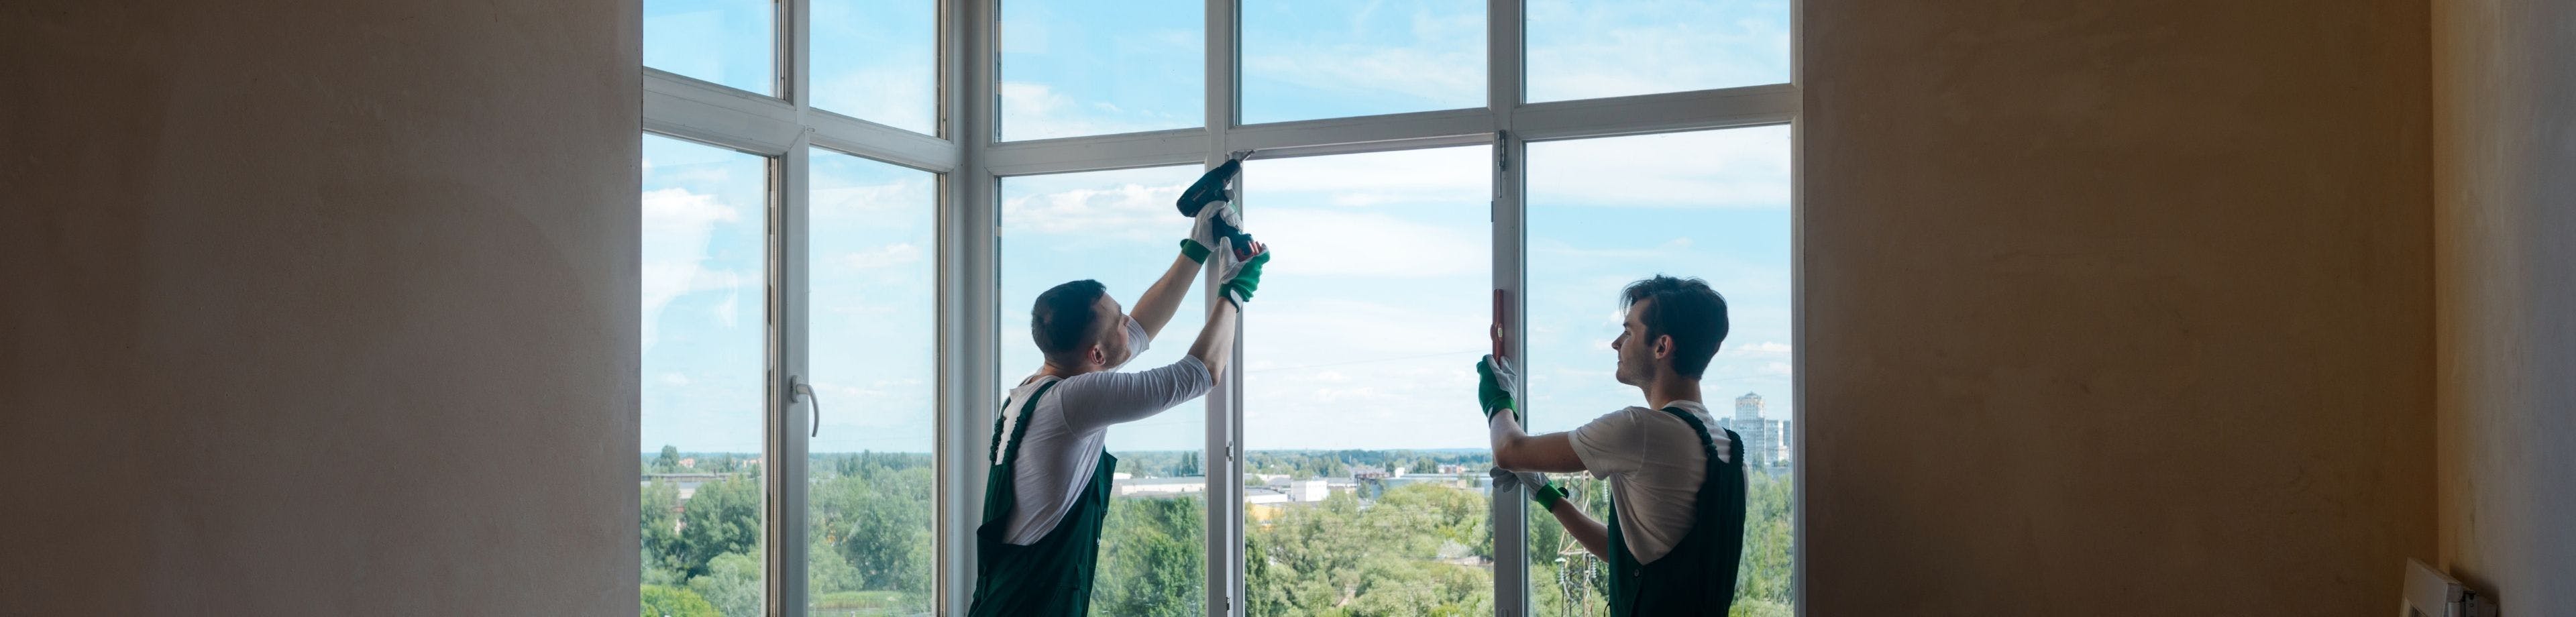 2 mannen in werk-overalls verrichten isolatiewerkzaamheden aan een raam.